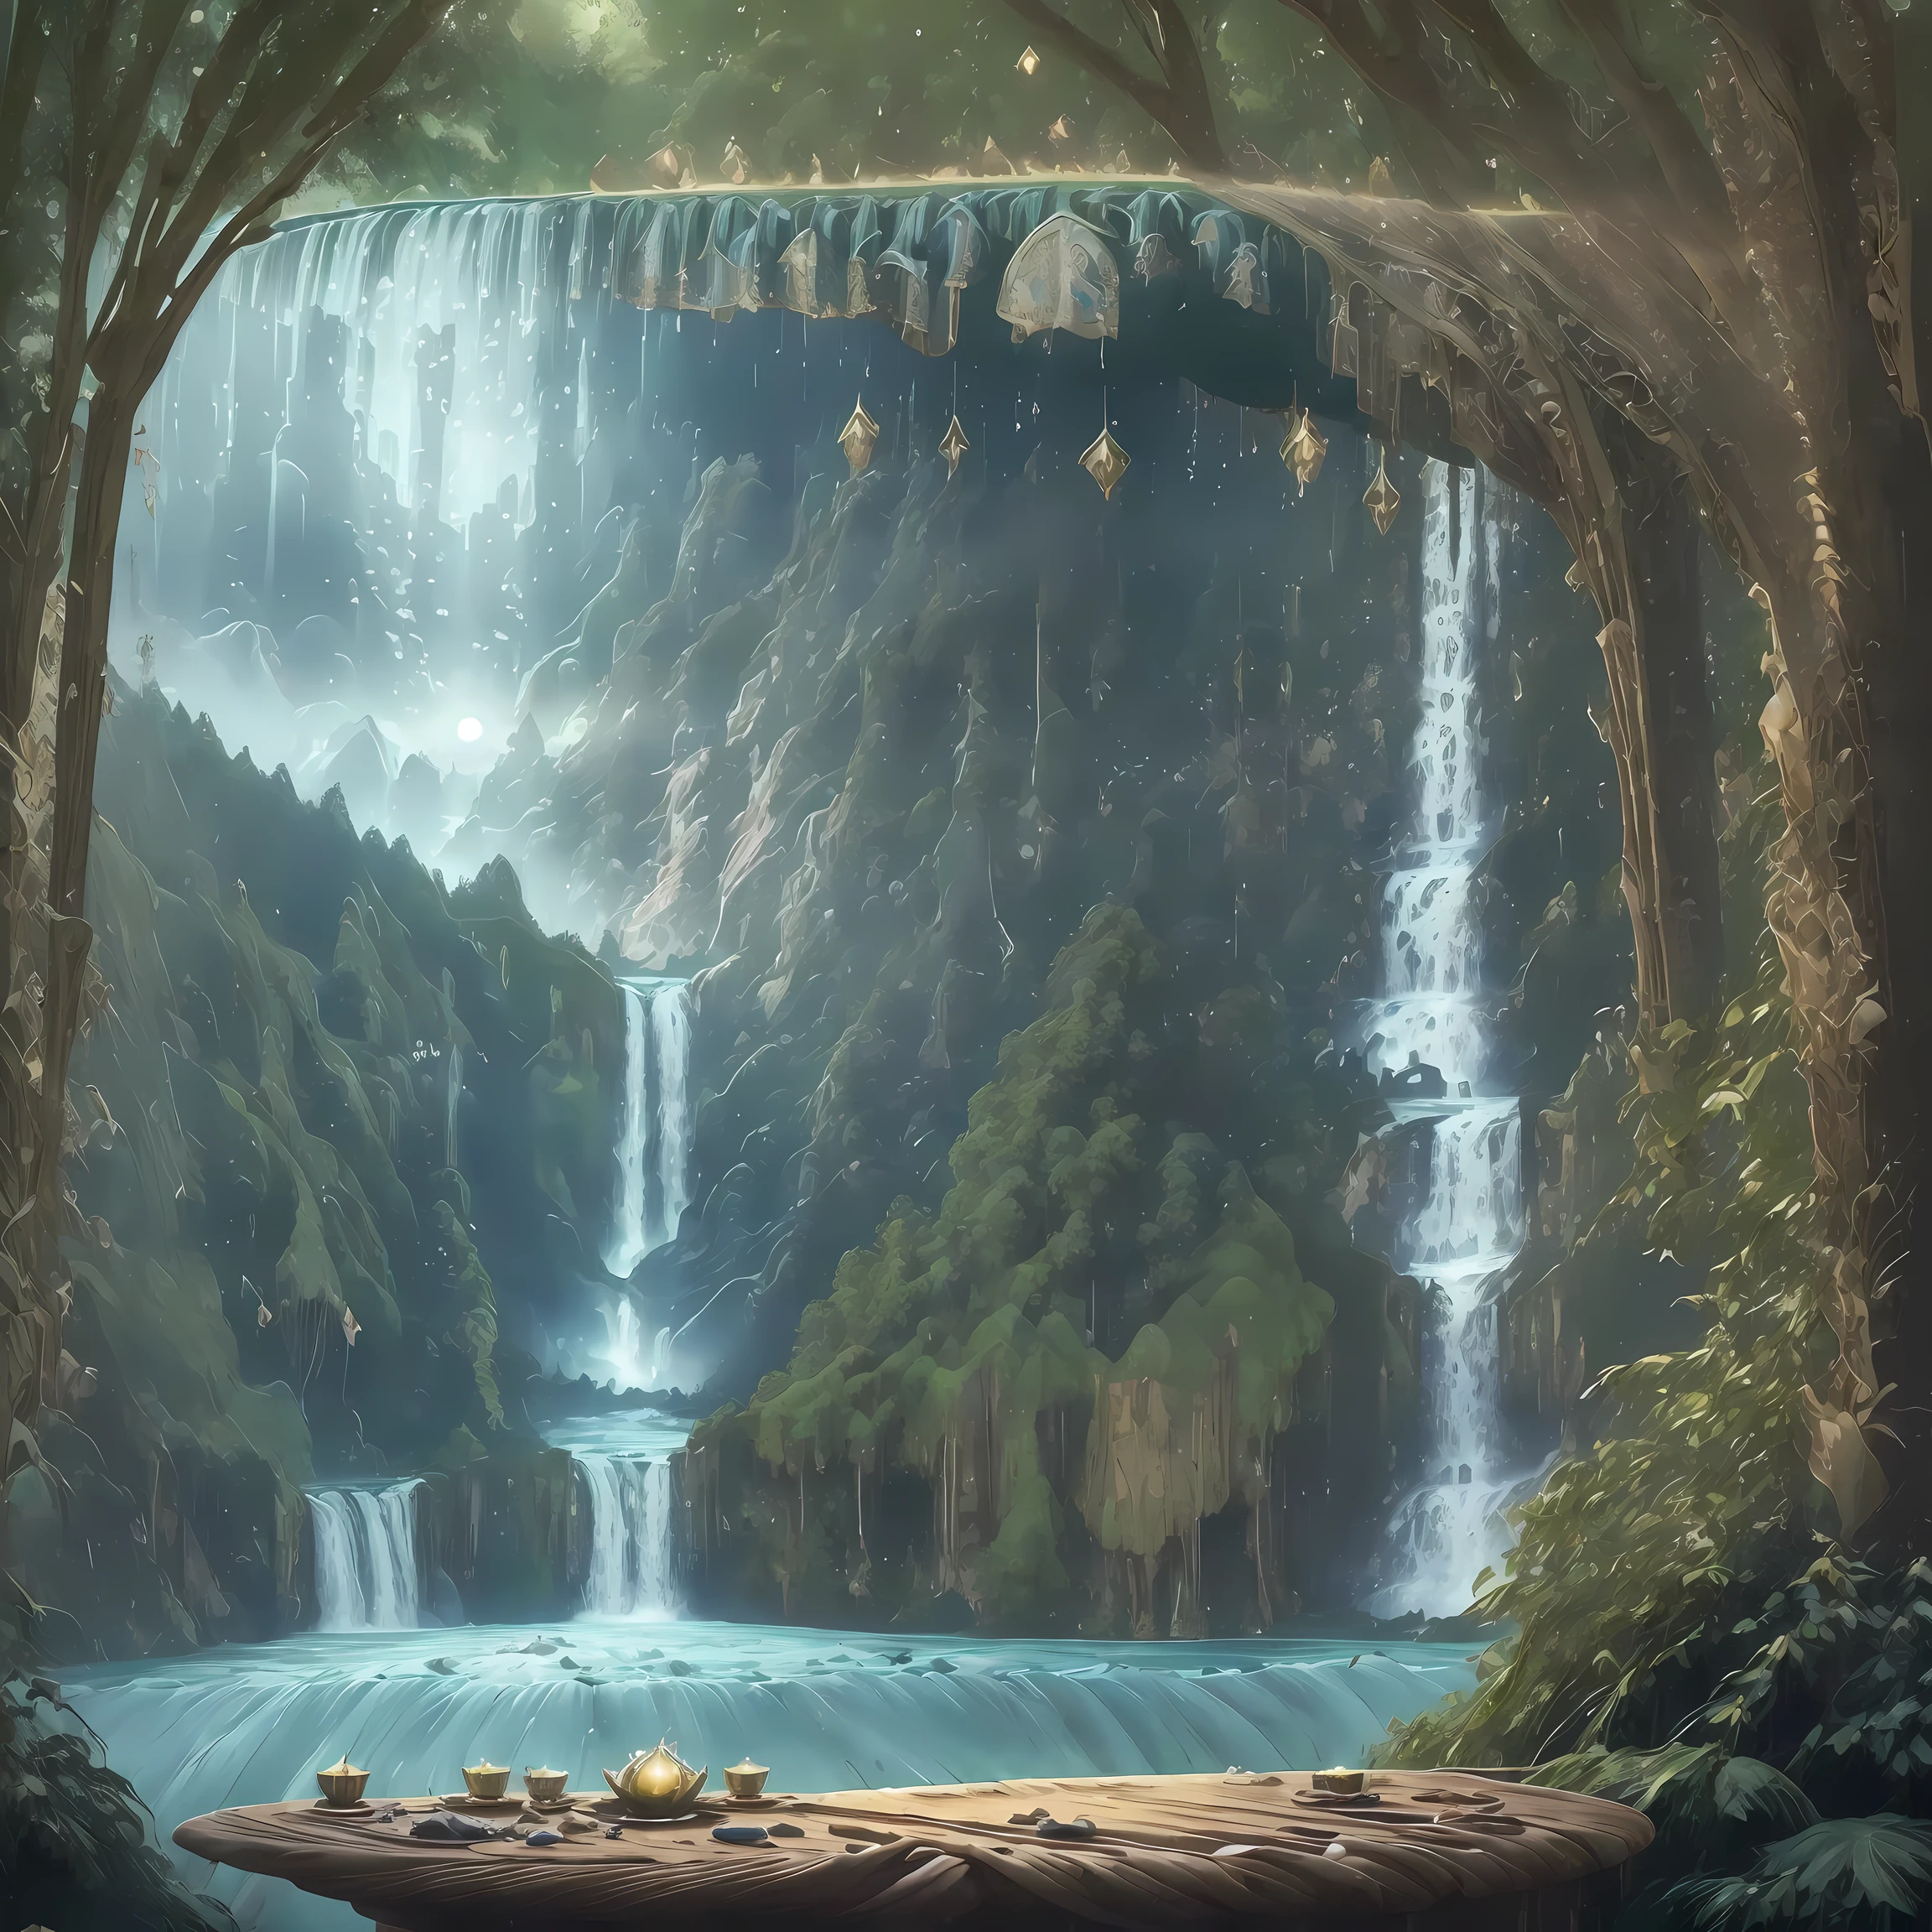 杰作, 32K, 团结 8k 壁纸, 极其详细, 超现实, 气泡, 杰作, 最好的质量,  精灵森林、梦幻森林、迷雾森林、(((充满魔力的神圣瀑布:1.5), 大瀑布、浓密的瀑布、类似尼亚加拉大瀑布的精灵森林瀑布、奇妙的氛围、  , (杰作,最好的质量:1.5), Liam Wong 的风格,克里斯特科 (🕌),🌿,🌳,🐚, 克林贡人, 刺绣, 餐桌,晴朗的天空,牙买加,地中海